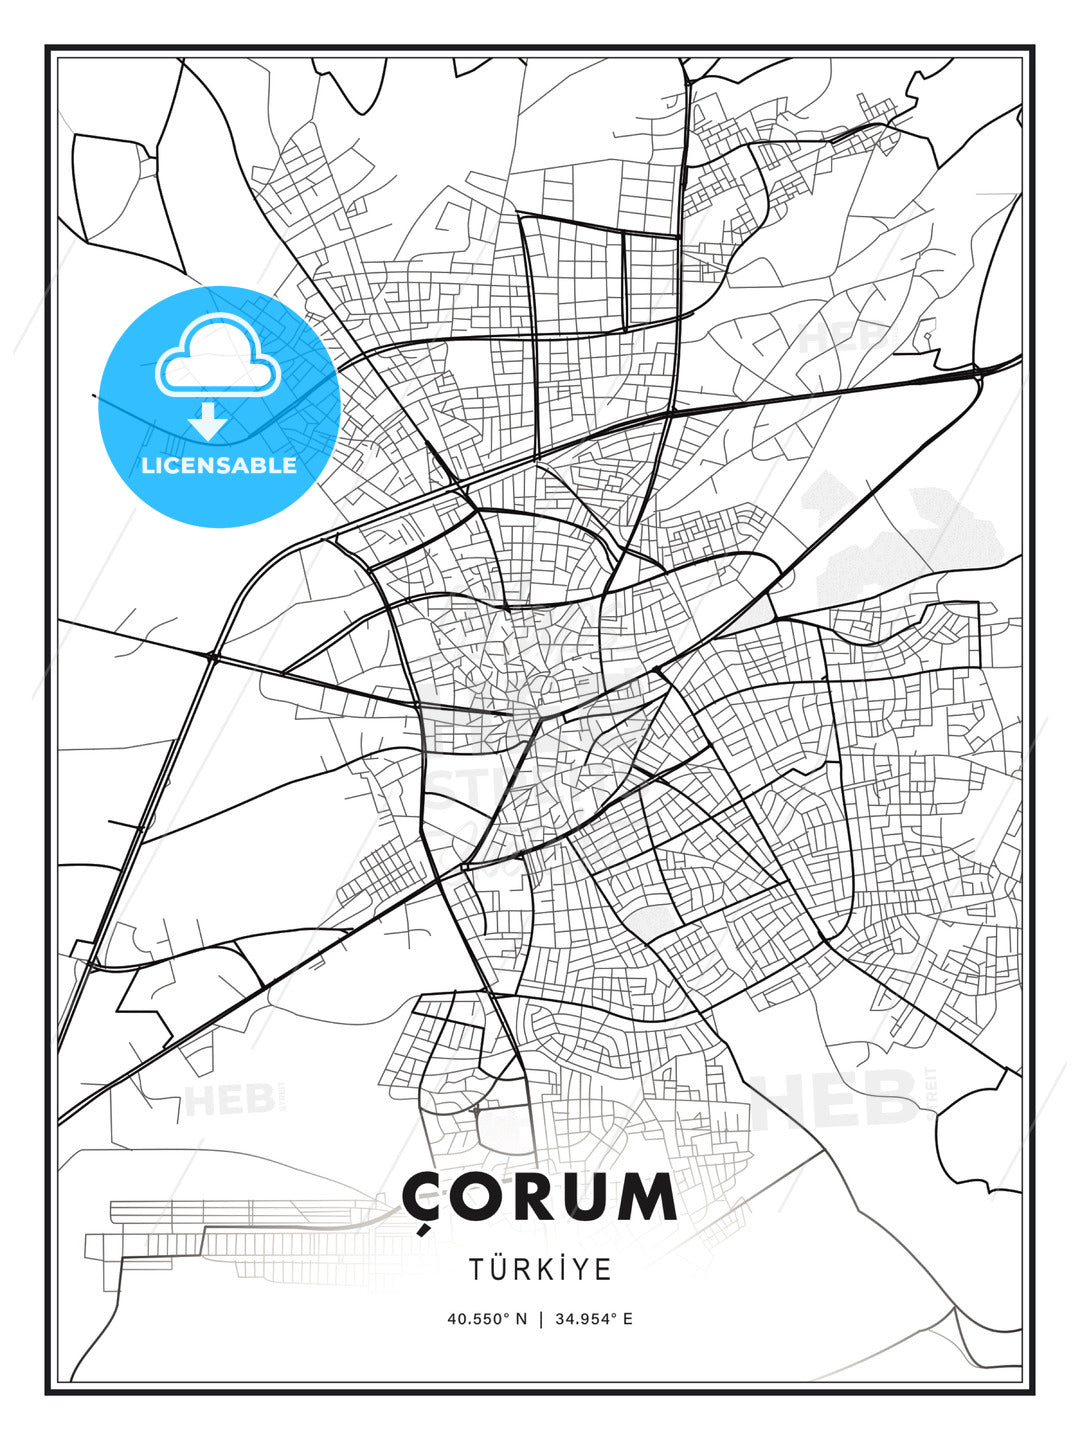 Çorum, Turkey, Modern Print Template in Various Formats - HEBSTREITS Sketches